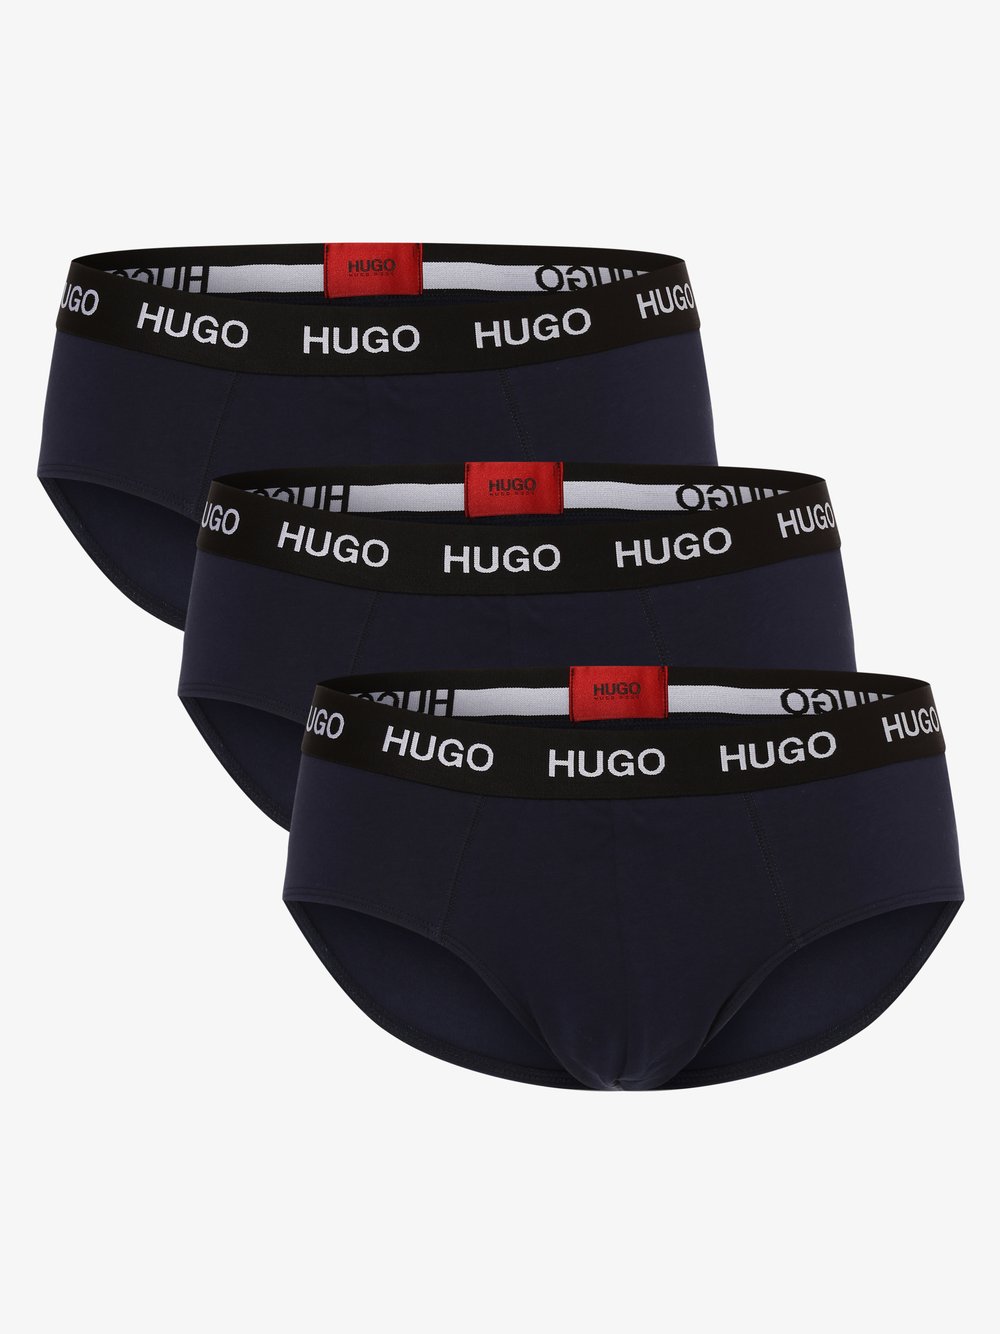 HUGO - Slipy męskie pakowane po 3 szt., niebieski